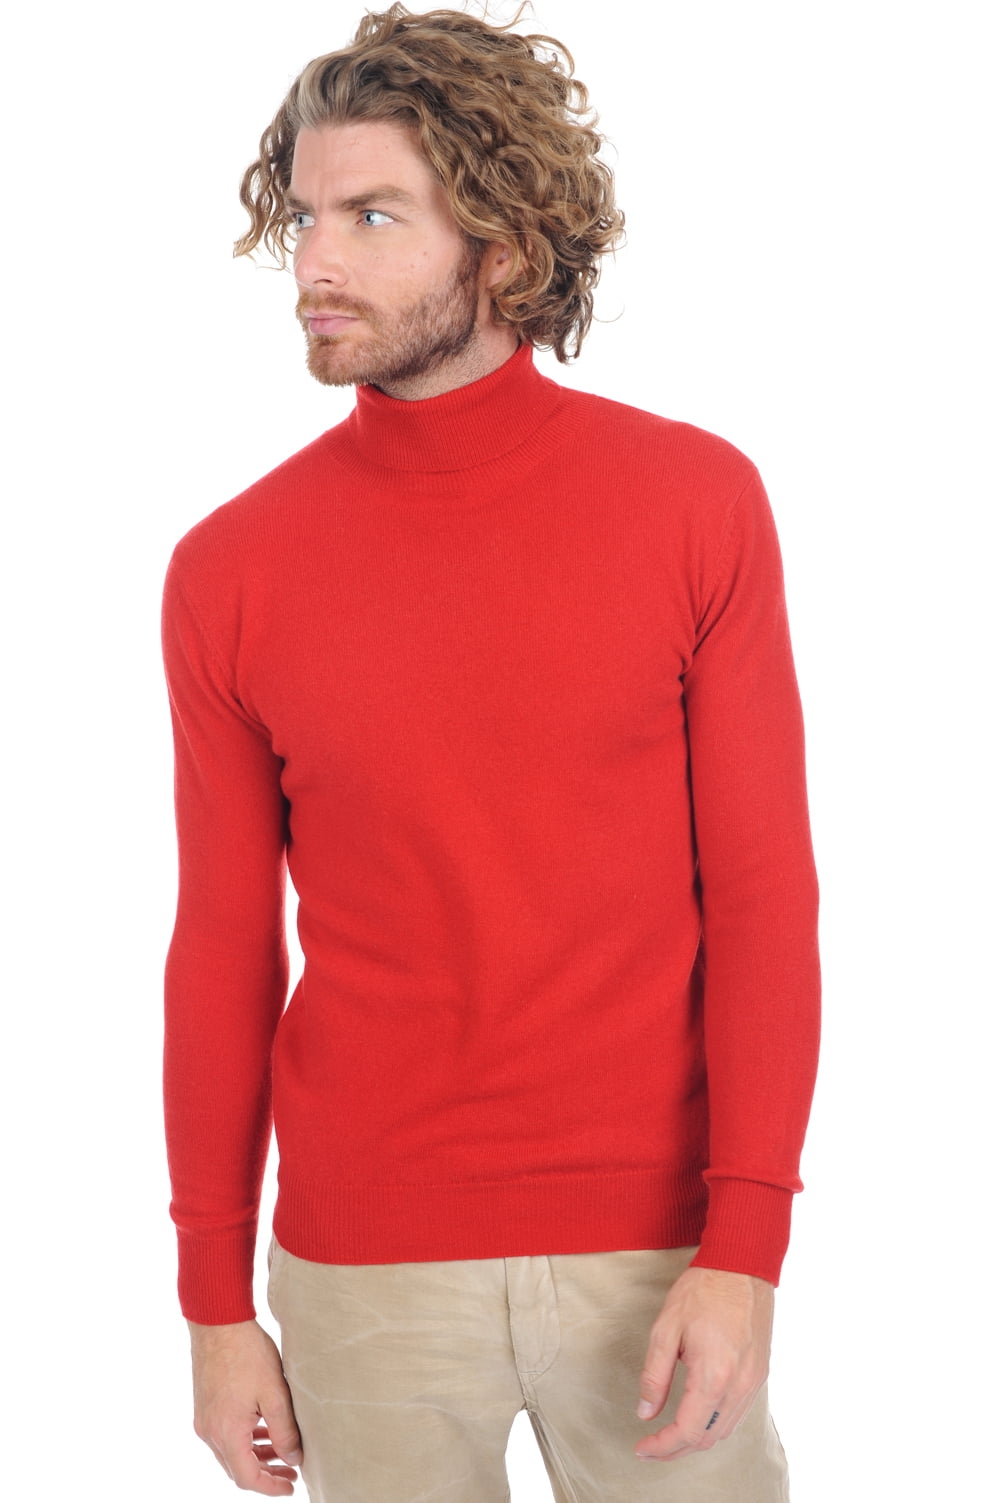 Cashmere kaschmir pullover herren tarry first ultra red s